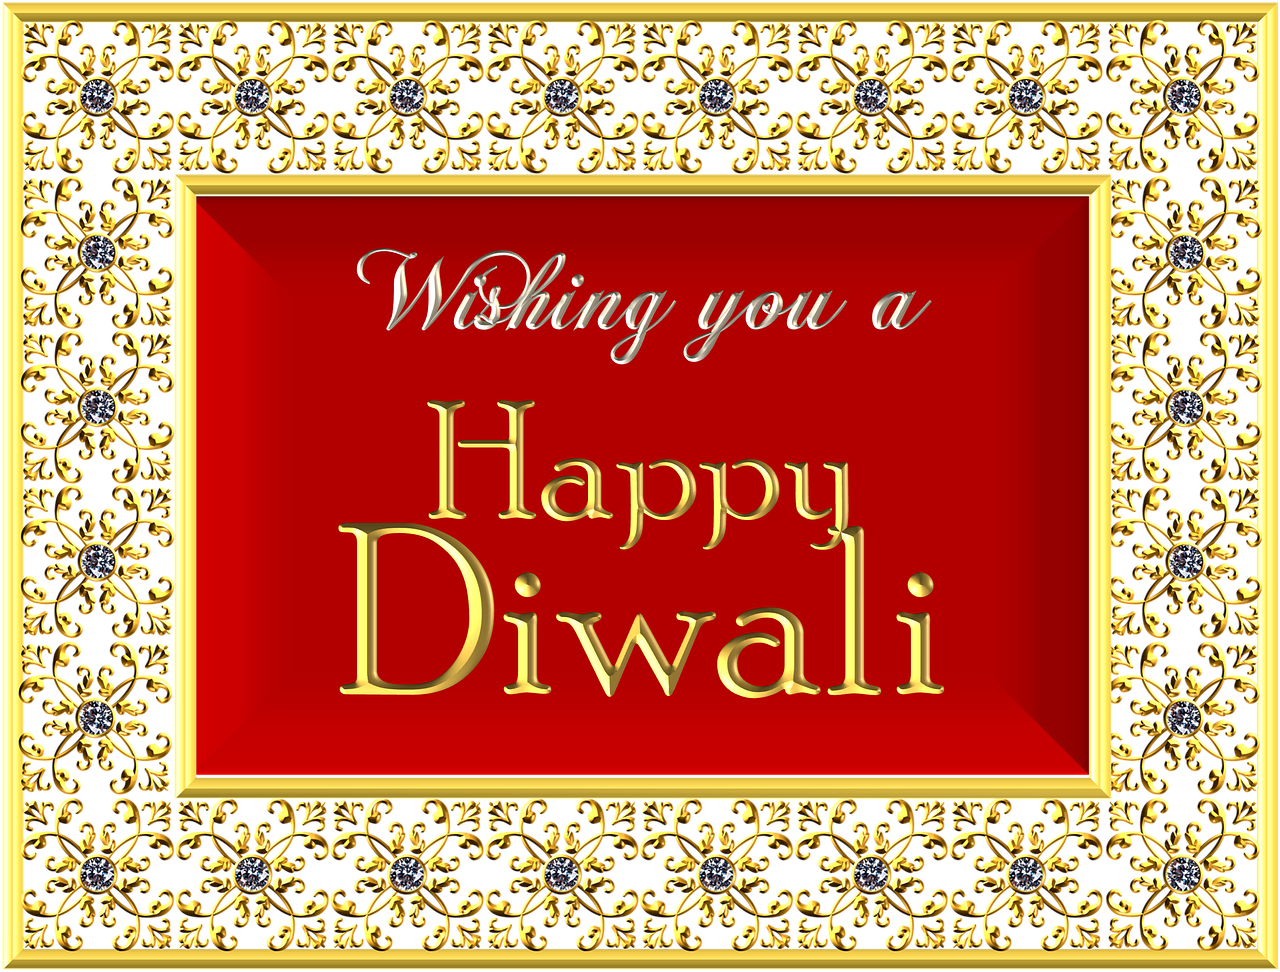 Happy Diwali Greeting Card